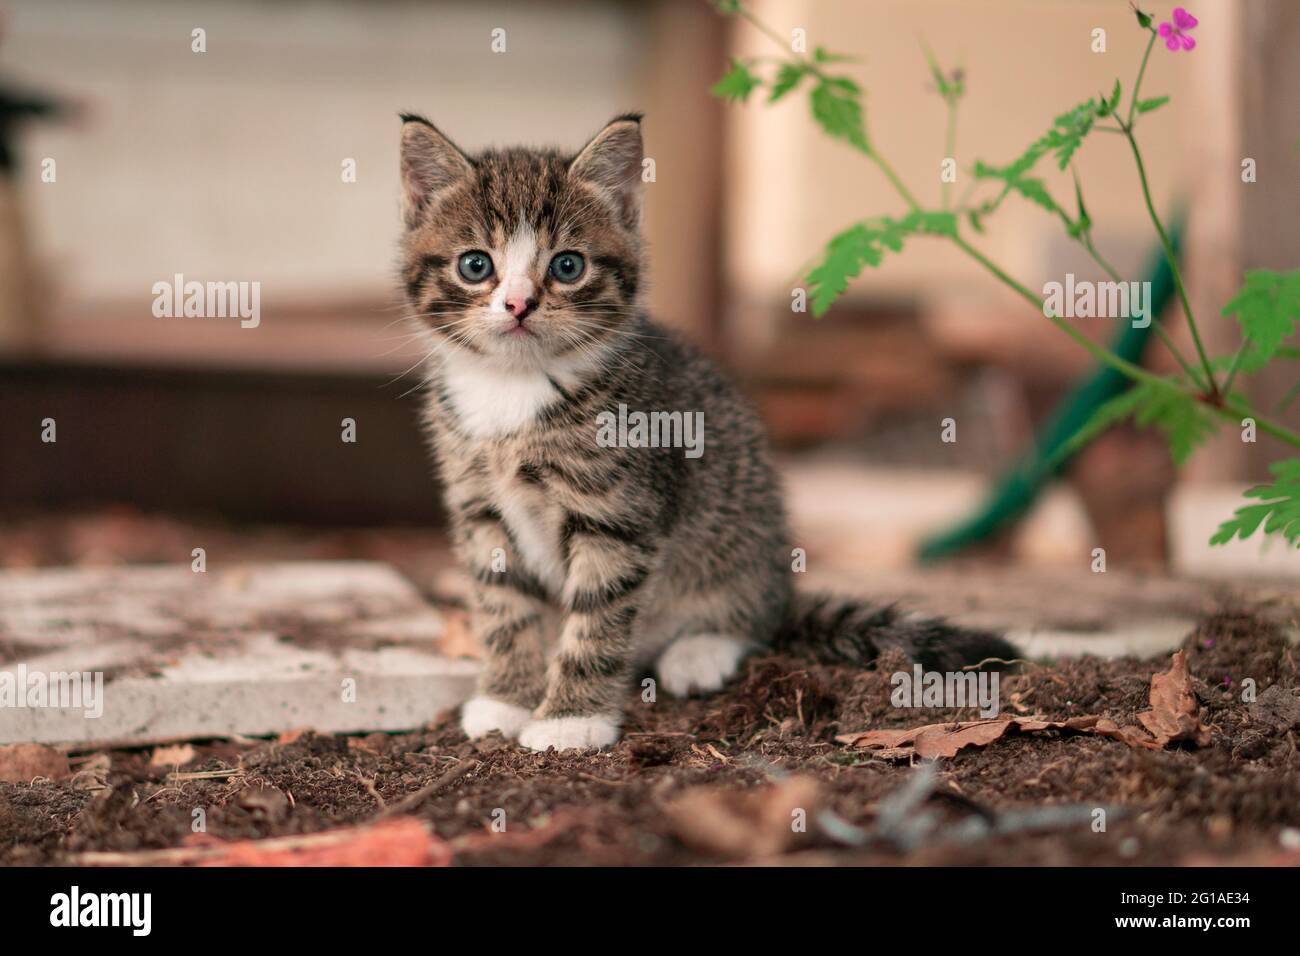 Gattino con occhi blu seduti sullo sporco. Piccolo gatto Baby con un piccolo fiore accanto ad esso. Foto Stock